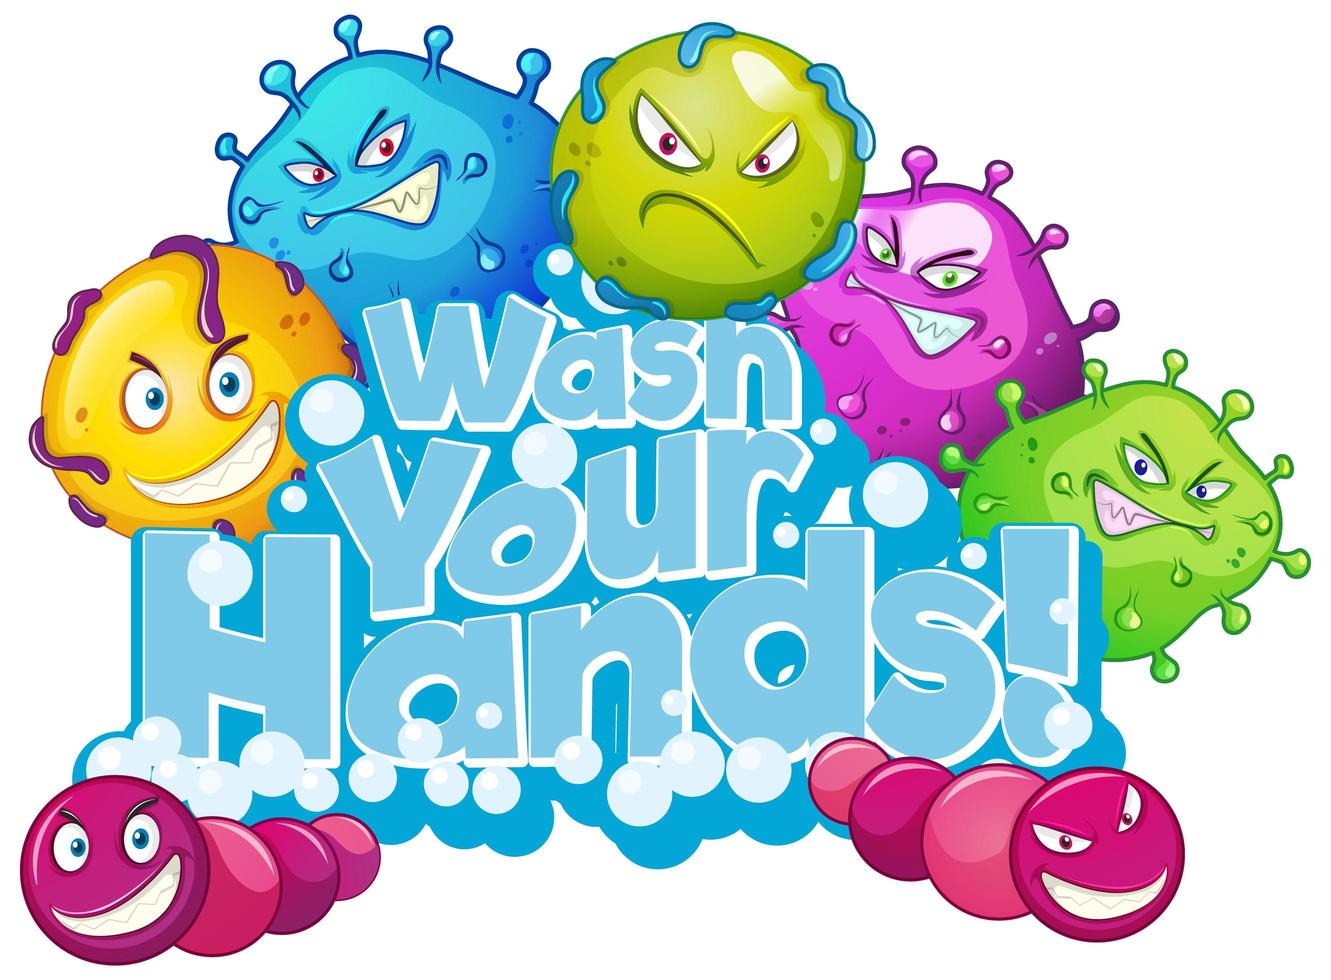 Wash your hands type design  vector